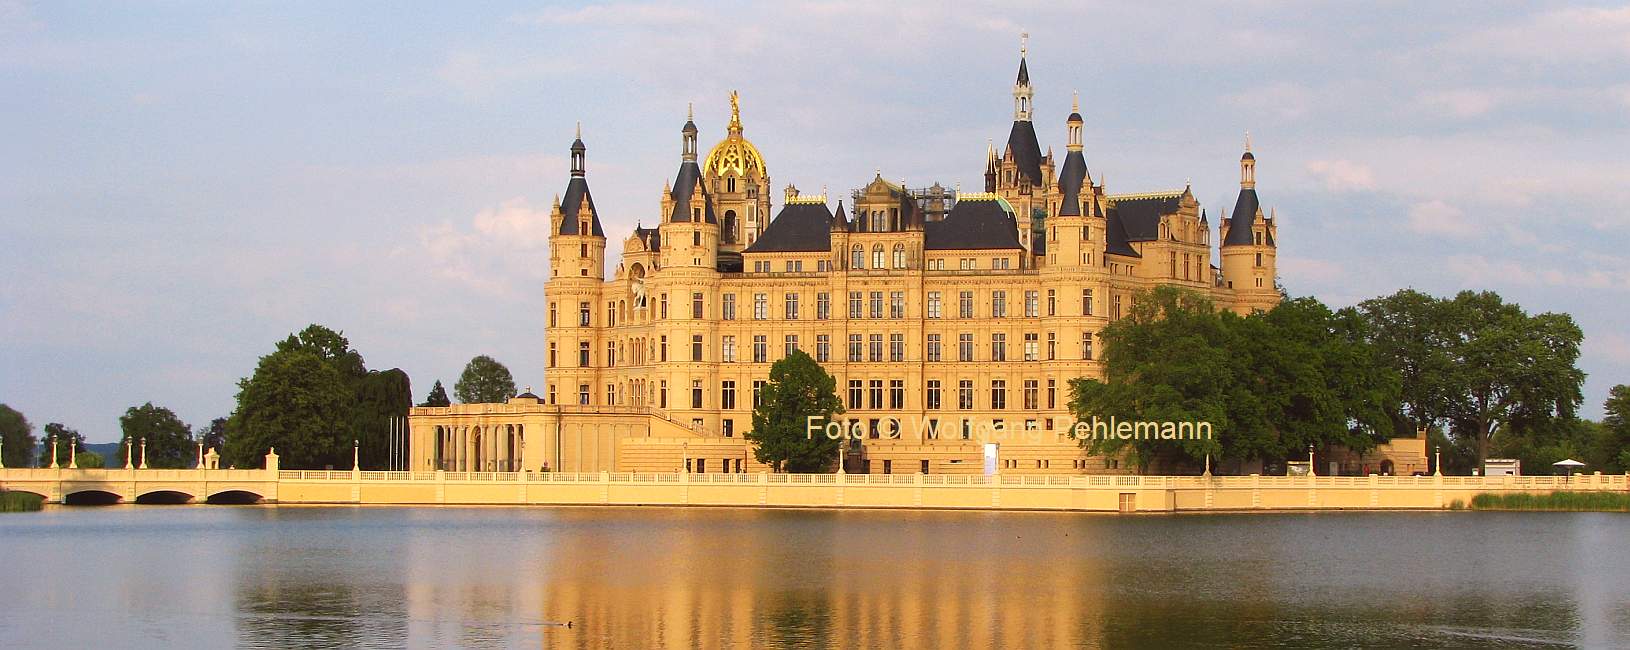 Landtag Mecklenburg-Vorpommer im Schloss Schwerin am Schweriner See - Foto © Wolfgang Pehlemann